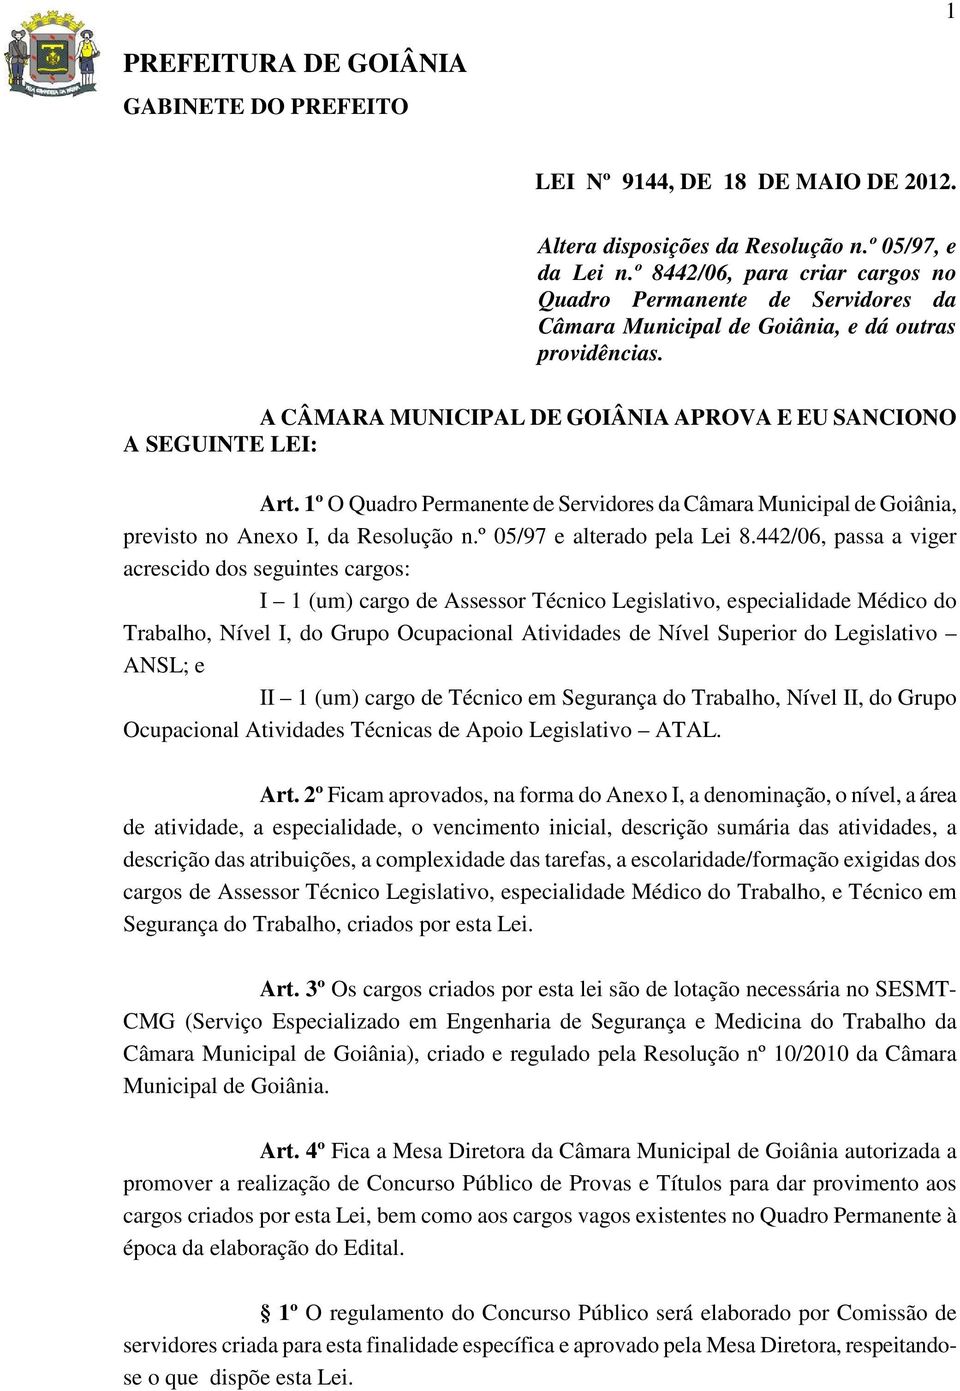 1º O Quadro Permanente de Servidores da Câmara Municipal de Goiânia, previsto no Anexo I, da Resolução n.º 05/97 e alterado pela Lei 8.